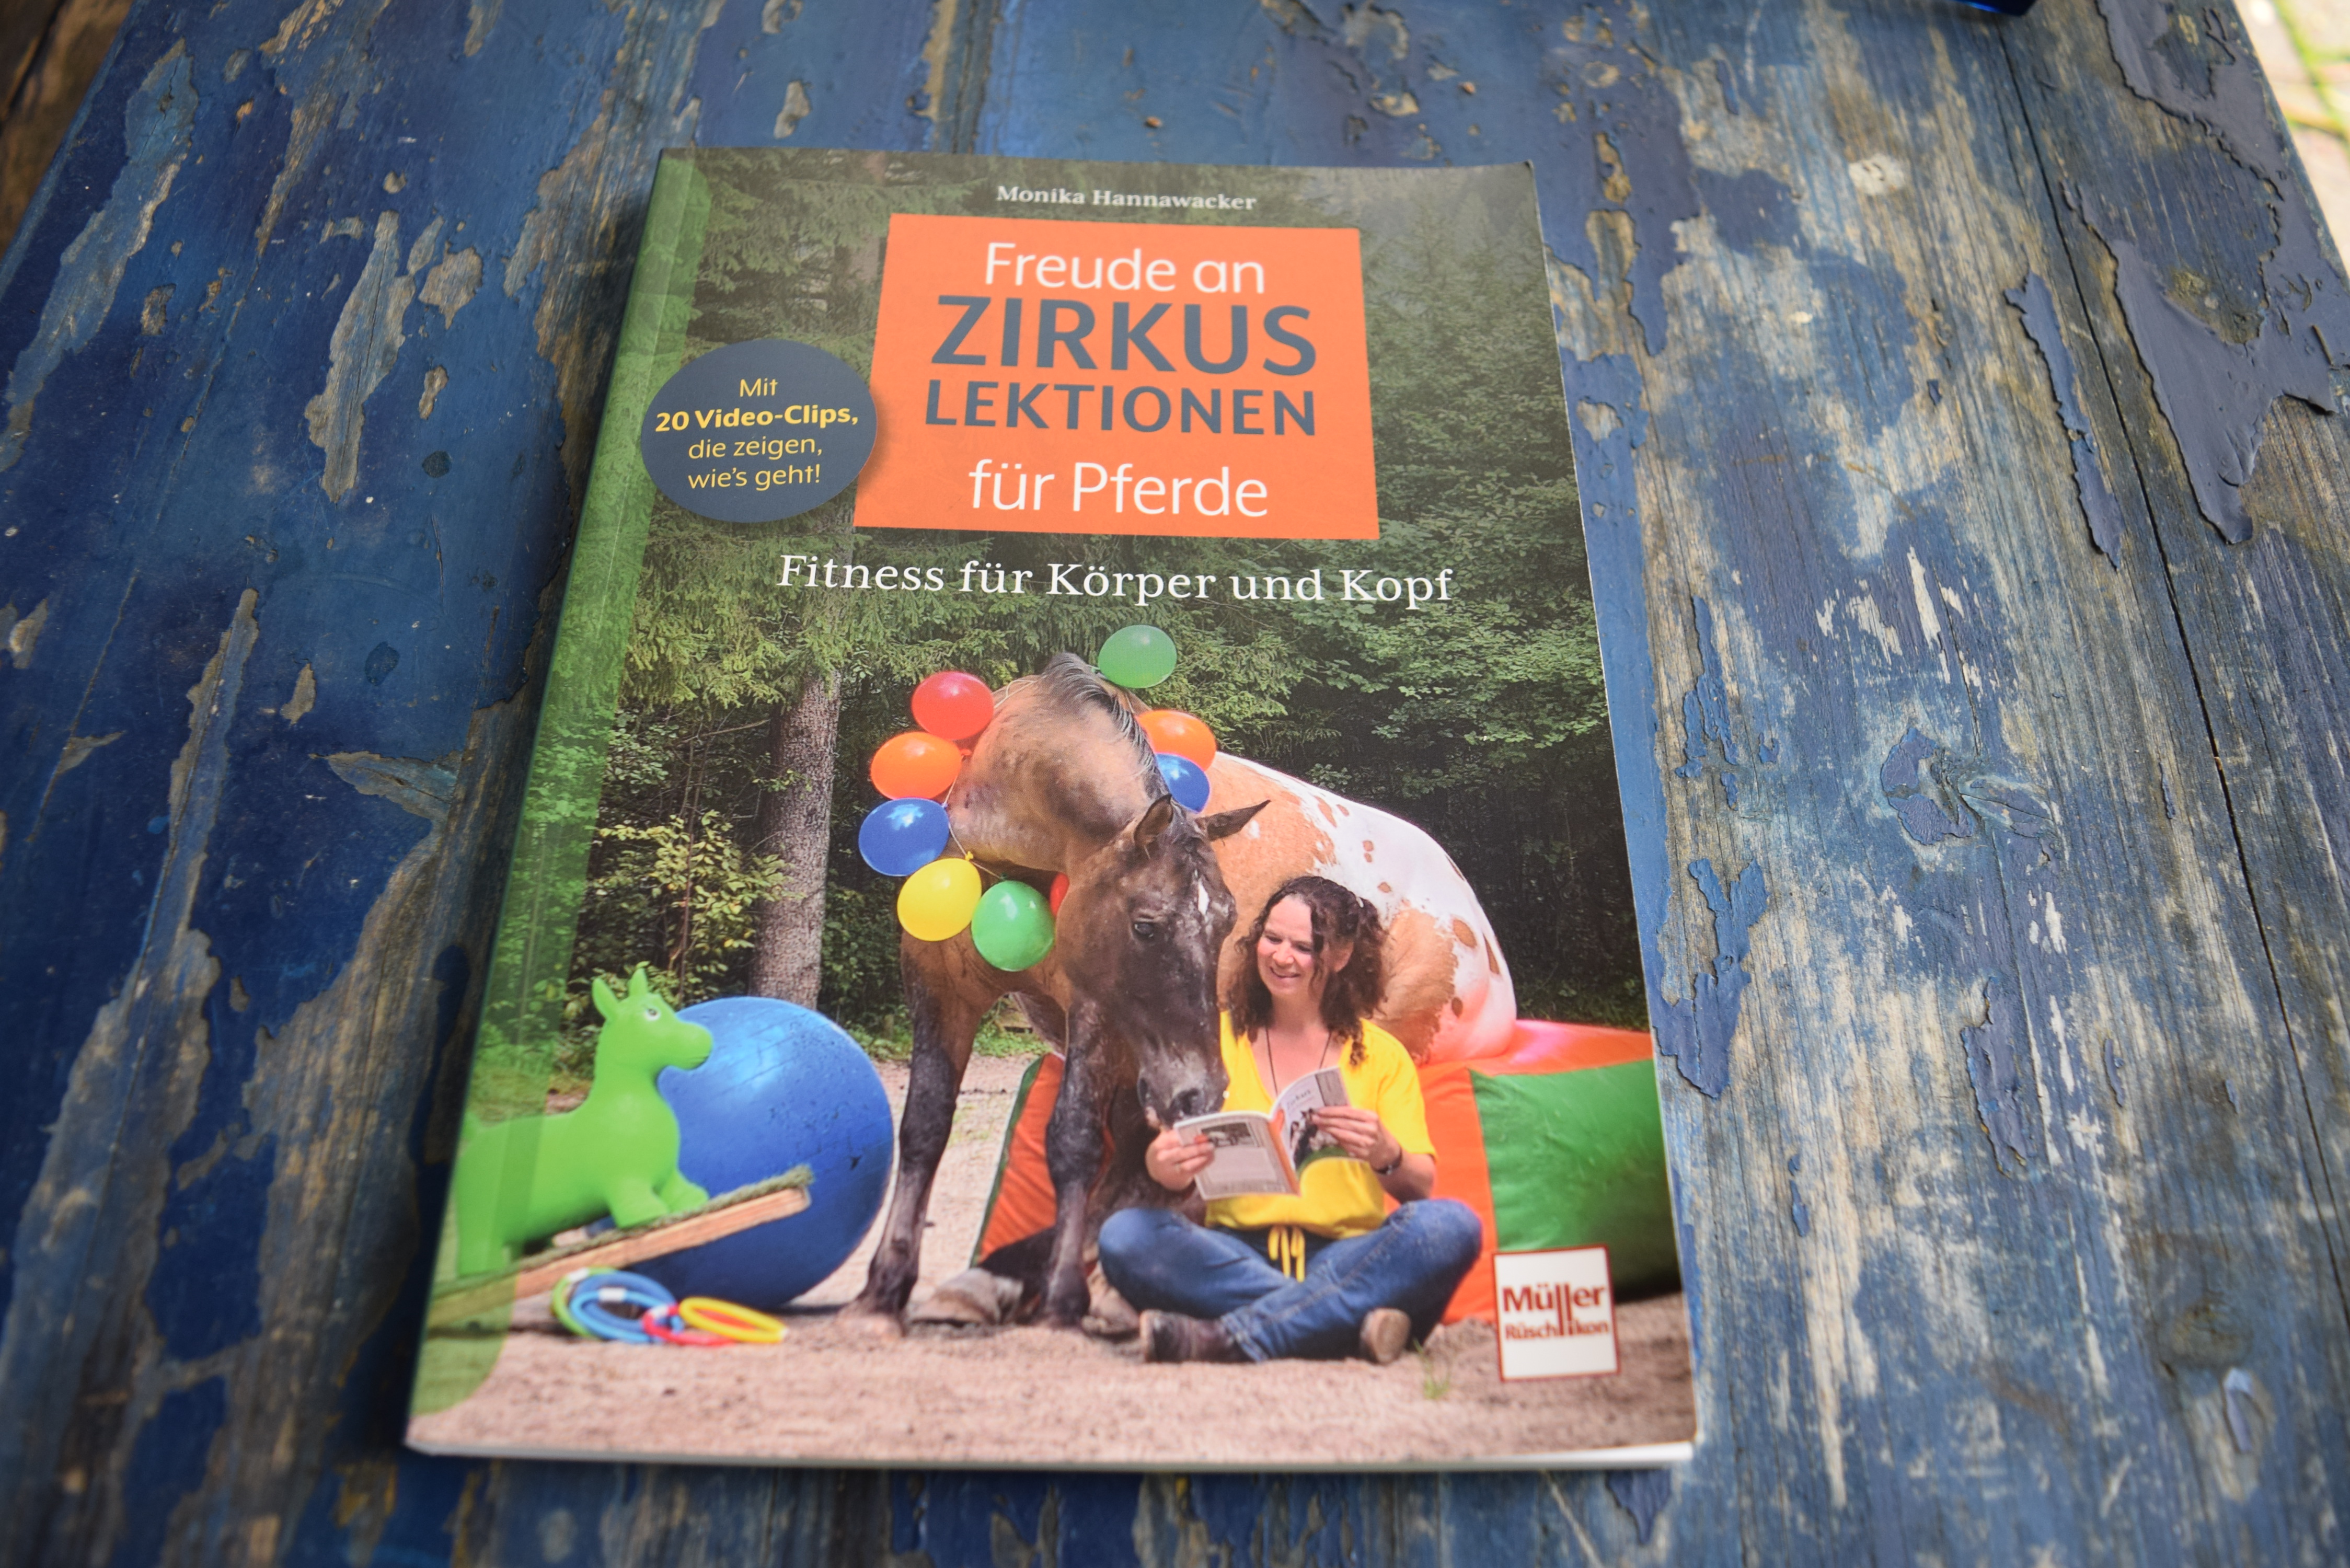 Buchempfehlung: "Freude an Zirkuslektionen von Monika Hannawacker